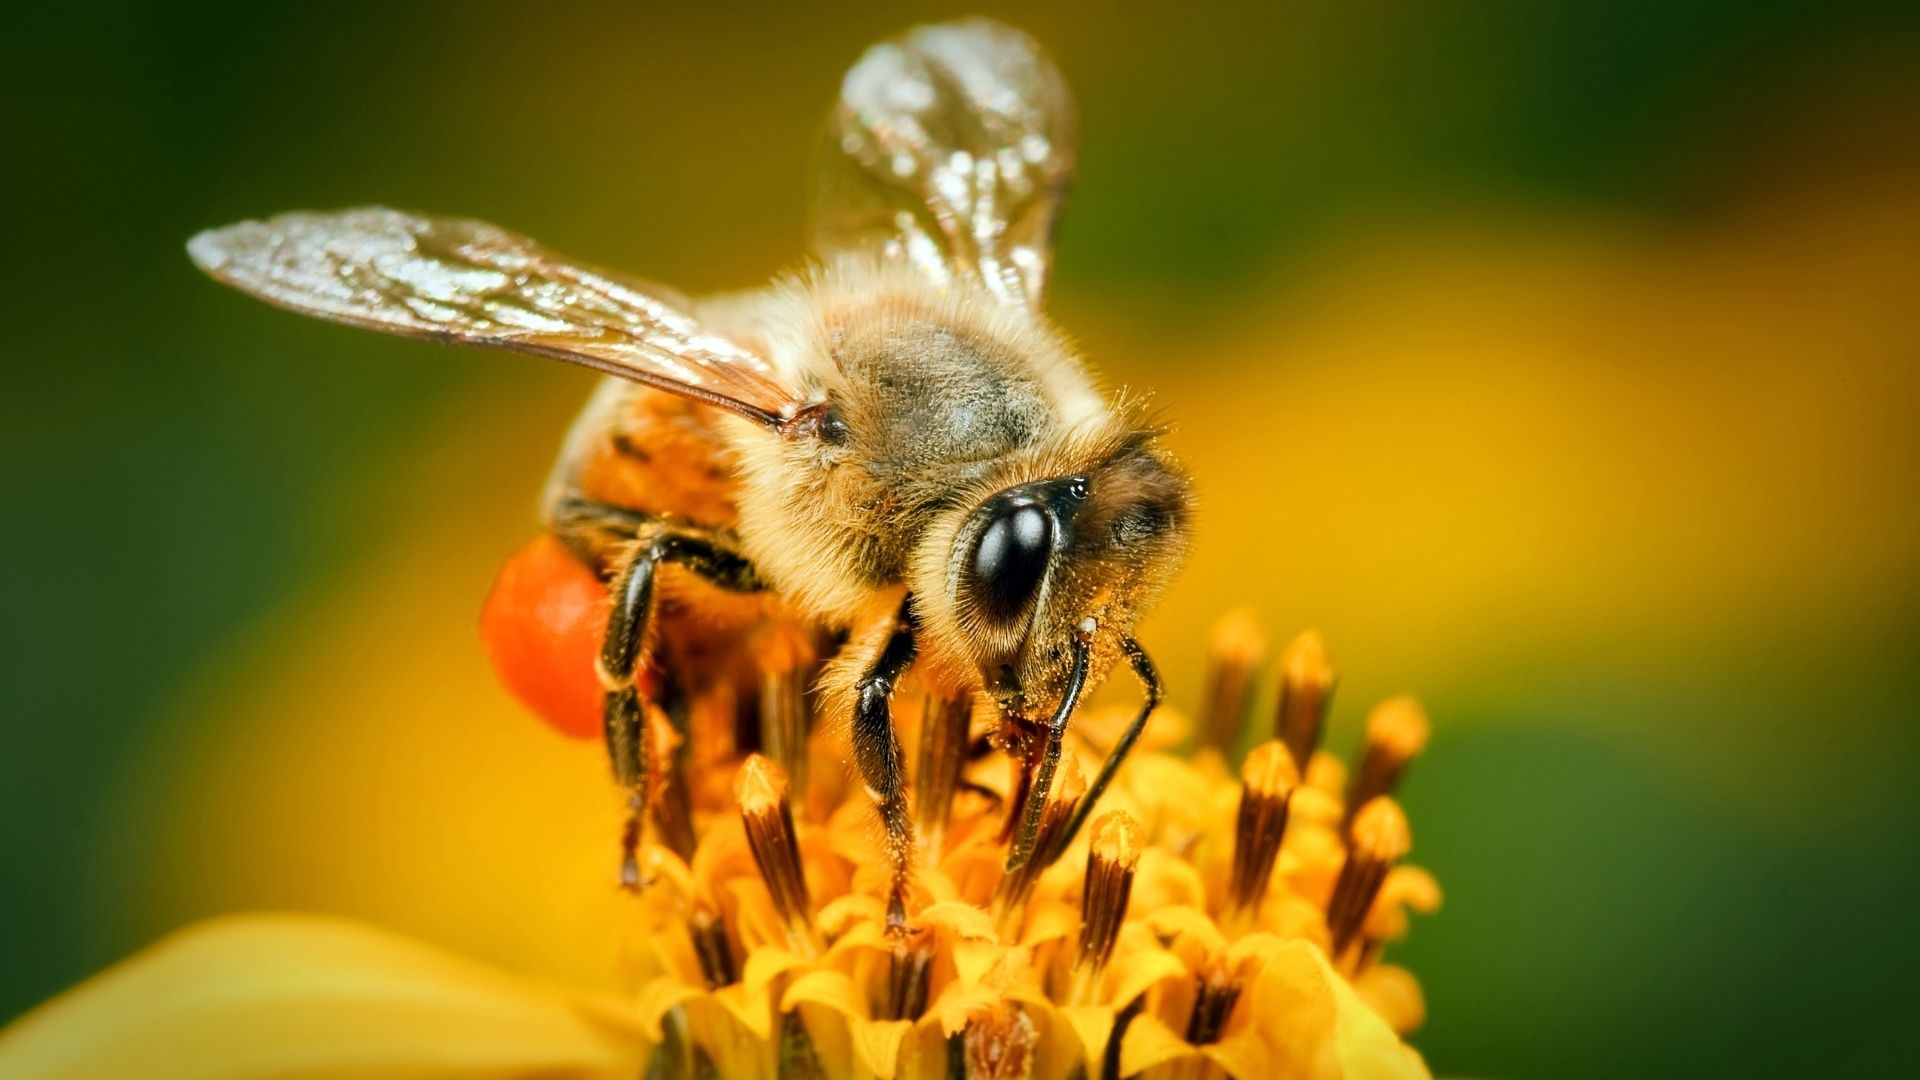 Bee download wallpaper image